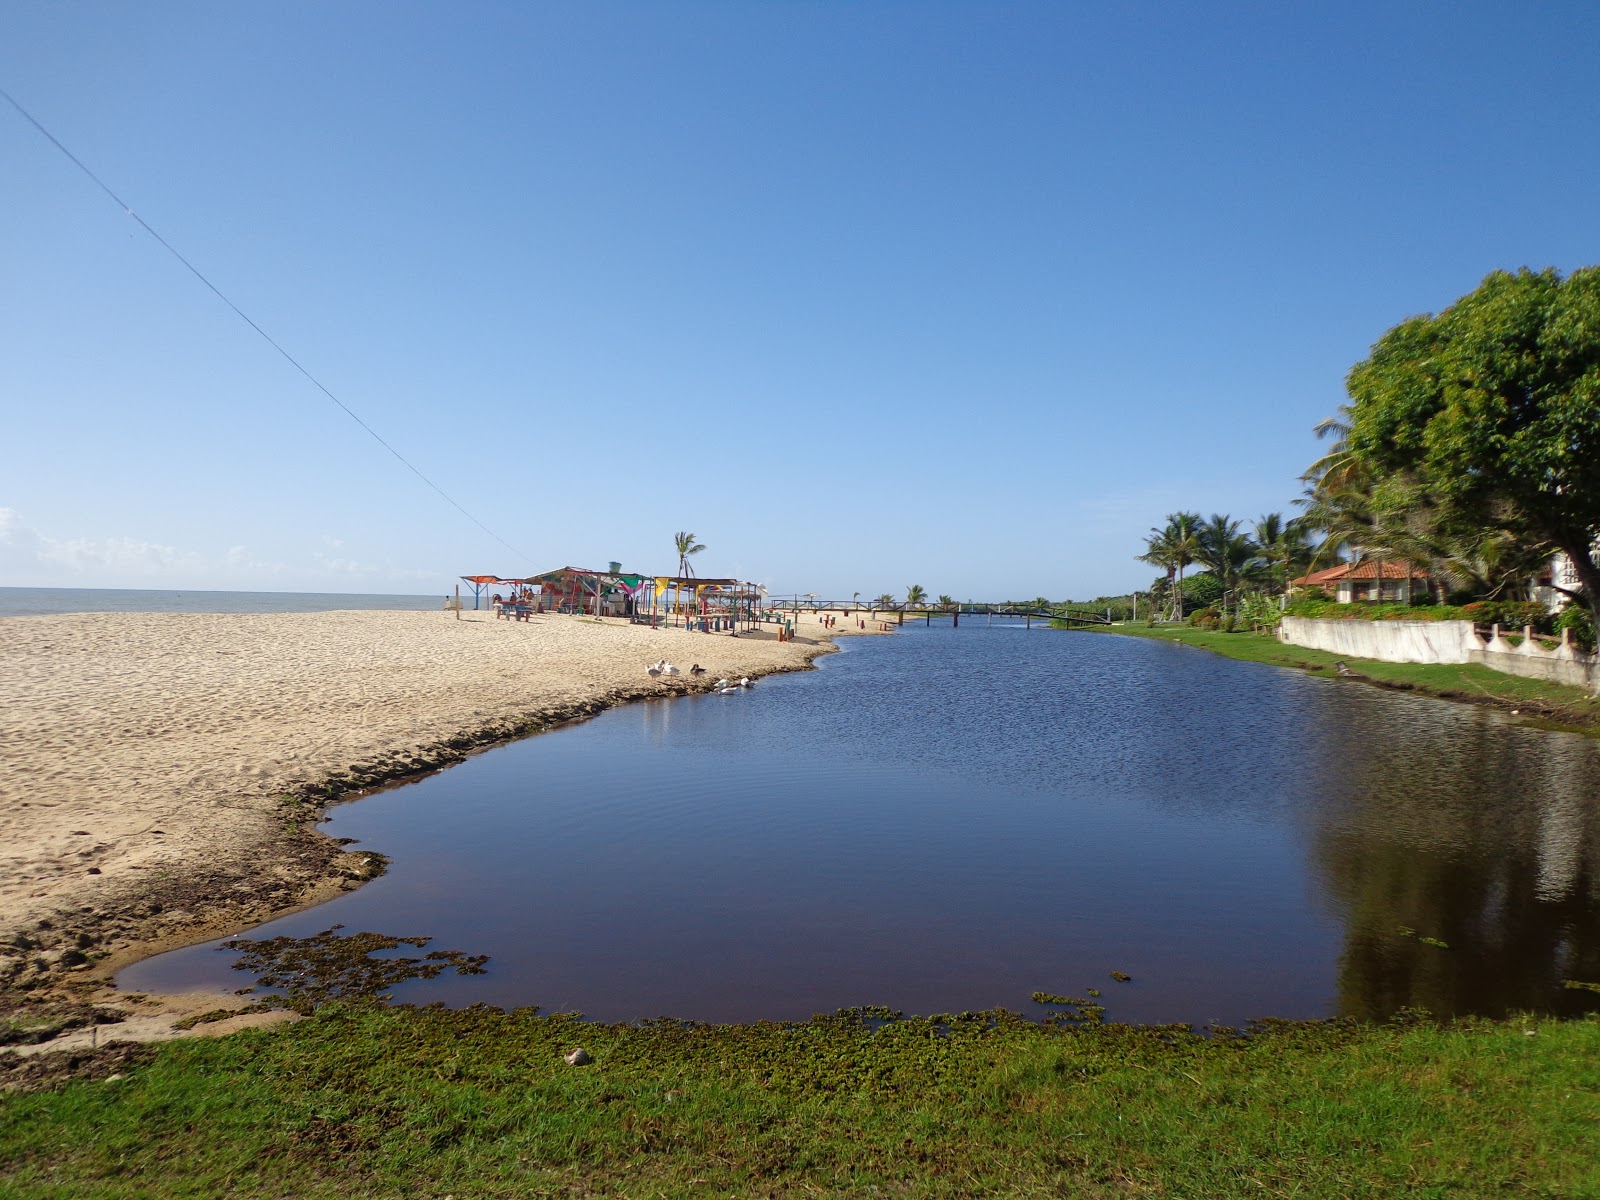 Zdjęcie Plaża Guaratiba - popularne miejsce wśród znawców relaksu